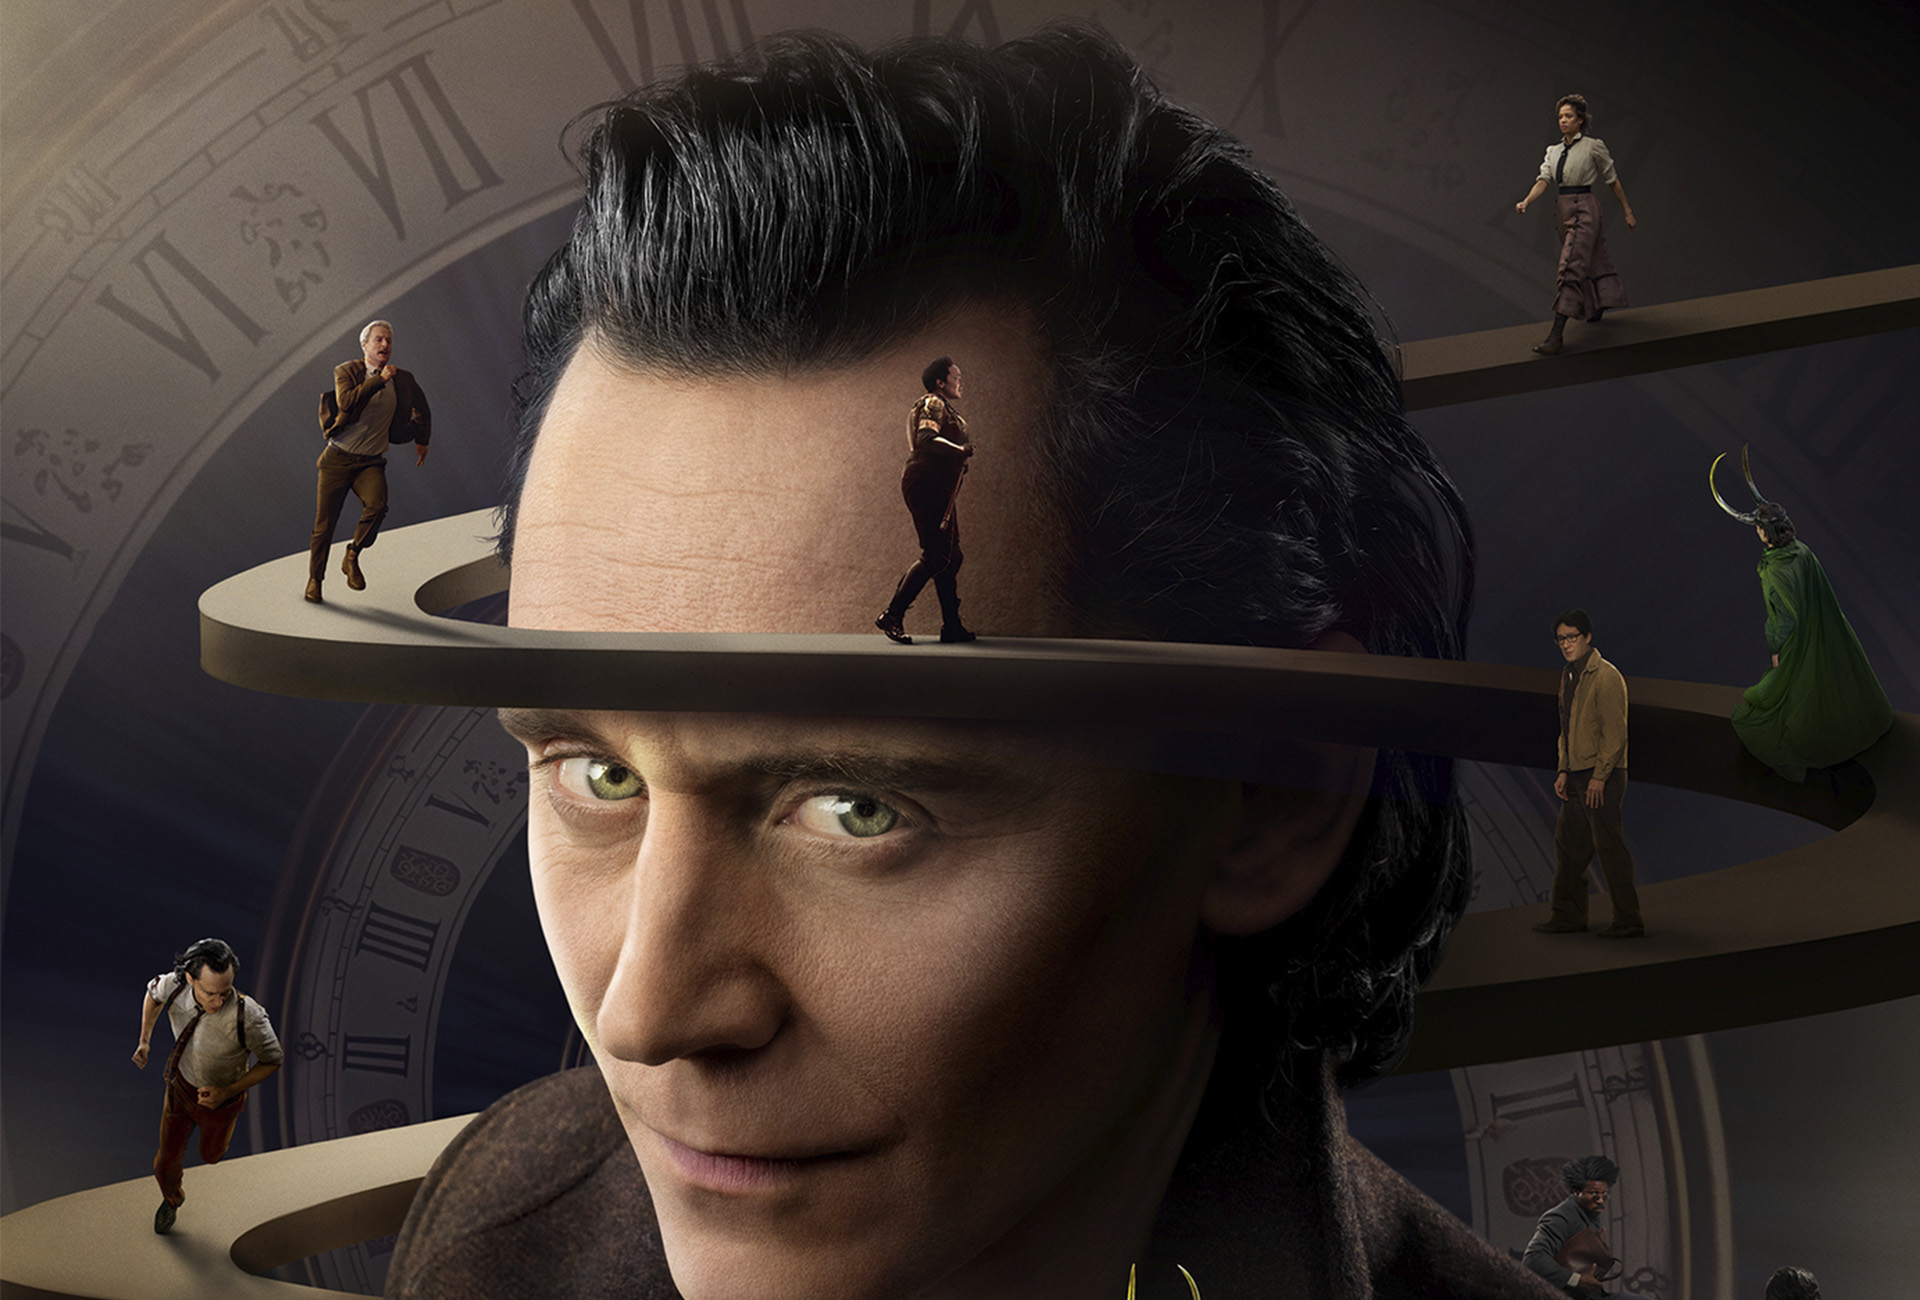 Kunstnere har kritiseret Disney for mulig brug af kunstig intelligens i 'Loki'-plakaten